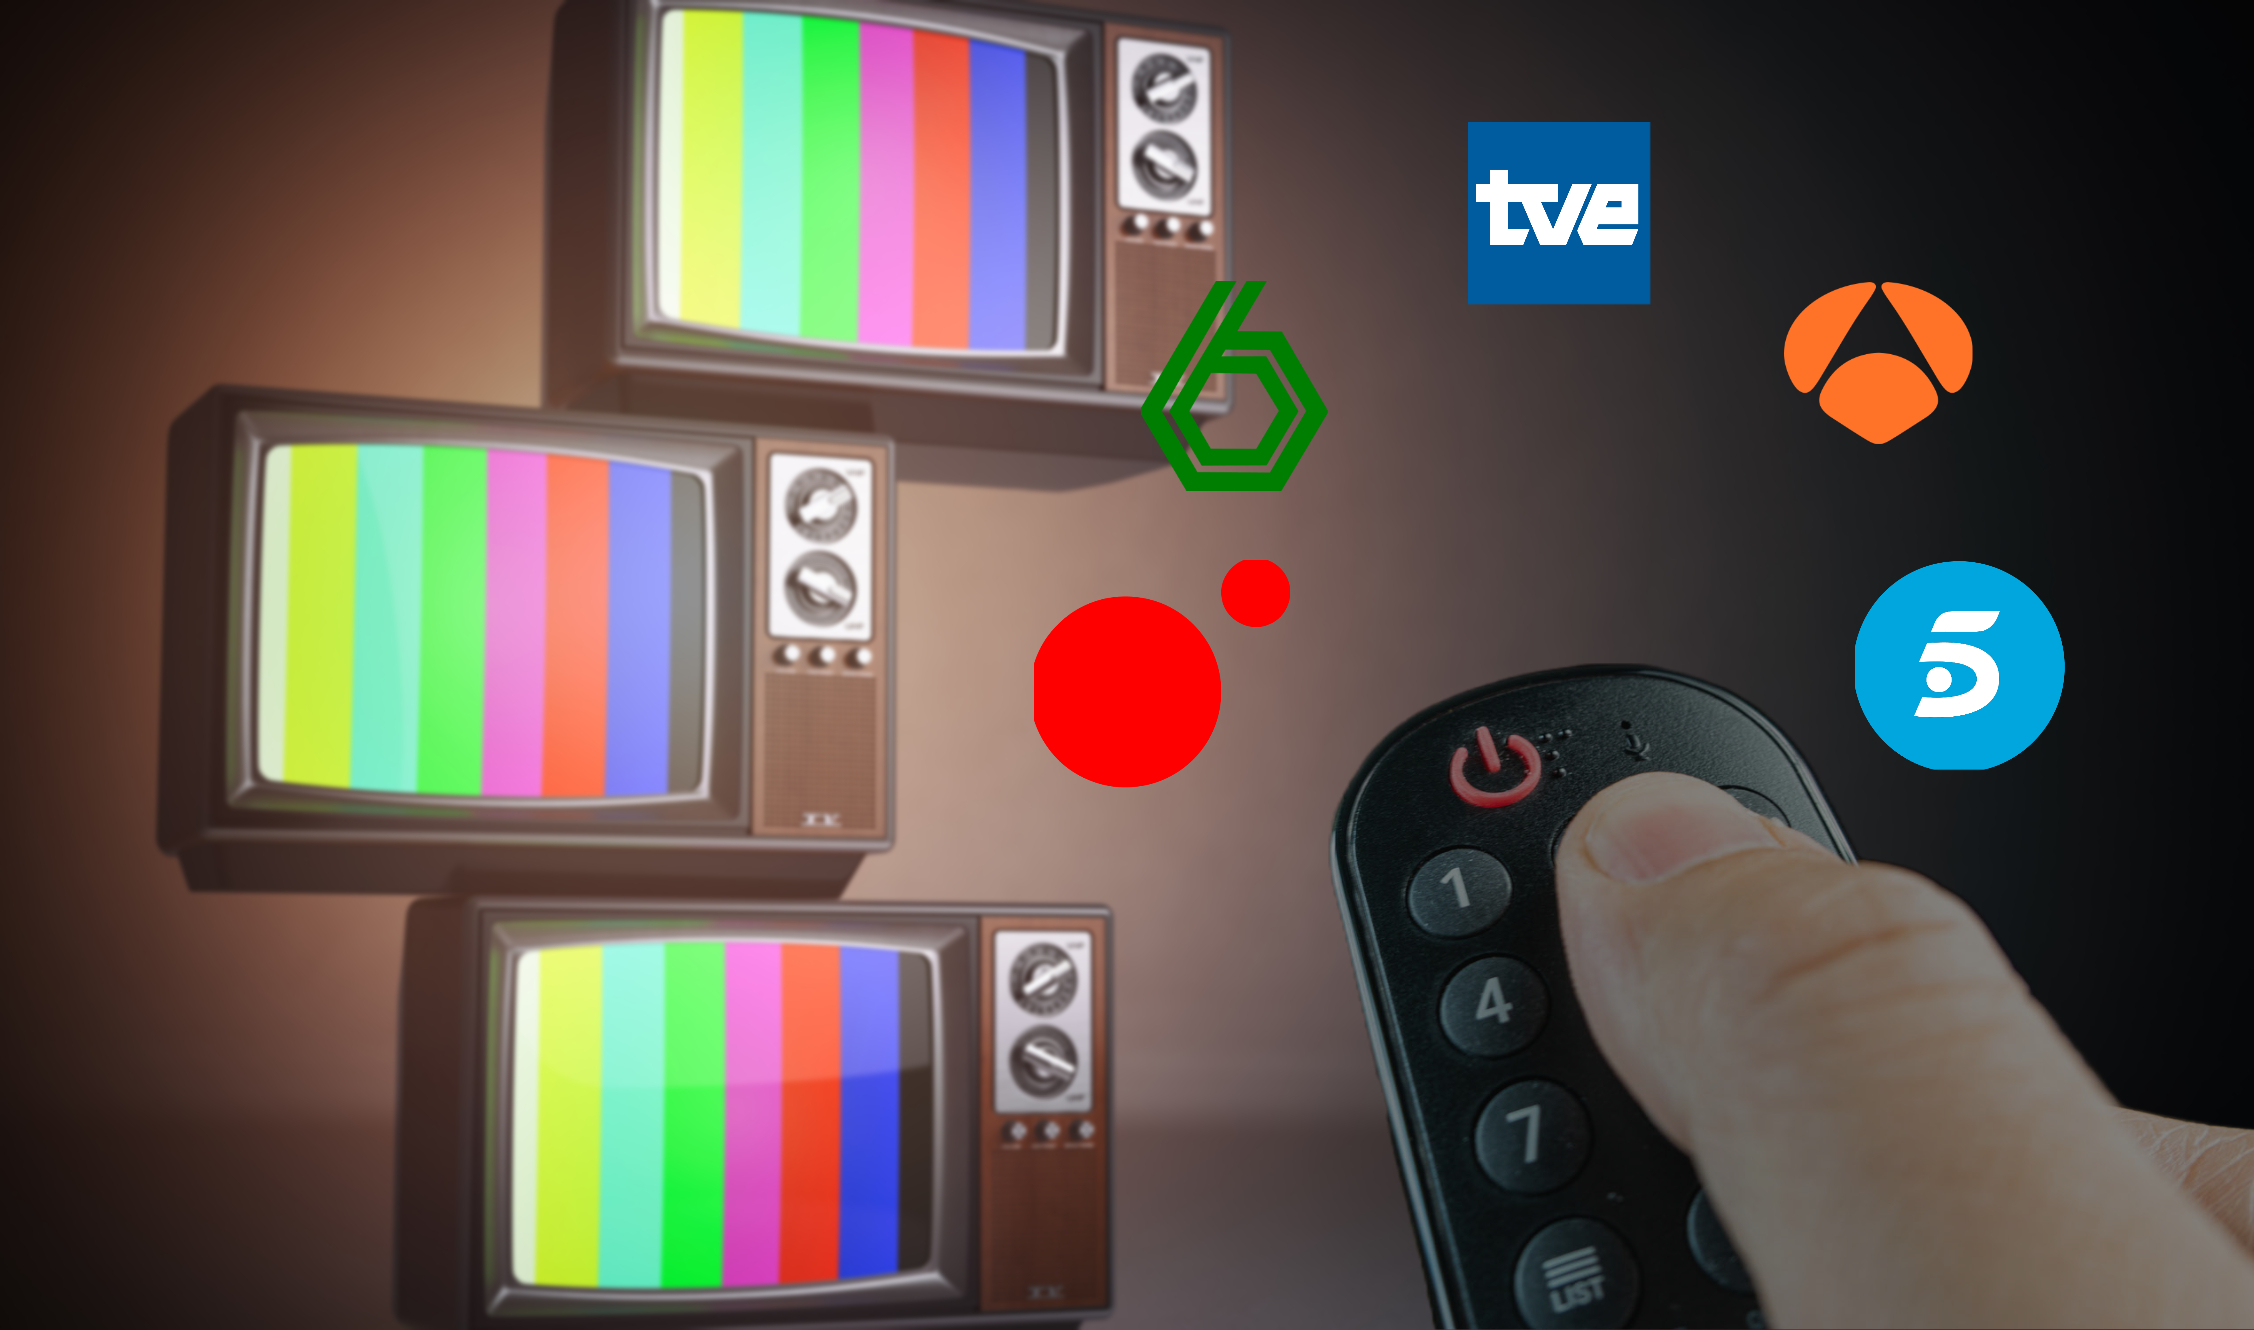 Cómo Ver la Televisión Digital Terrestre en mi Smart TV sin Antena?, ¿Cuál  es el Truco?